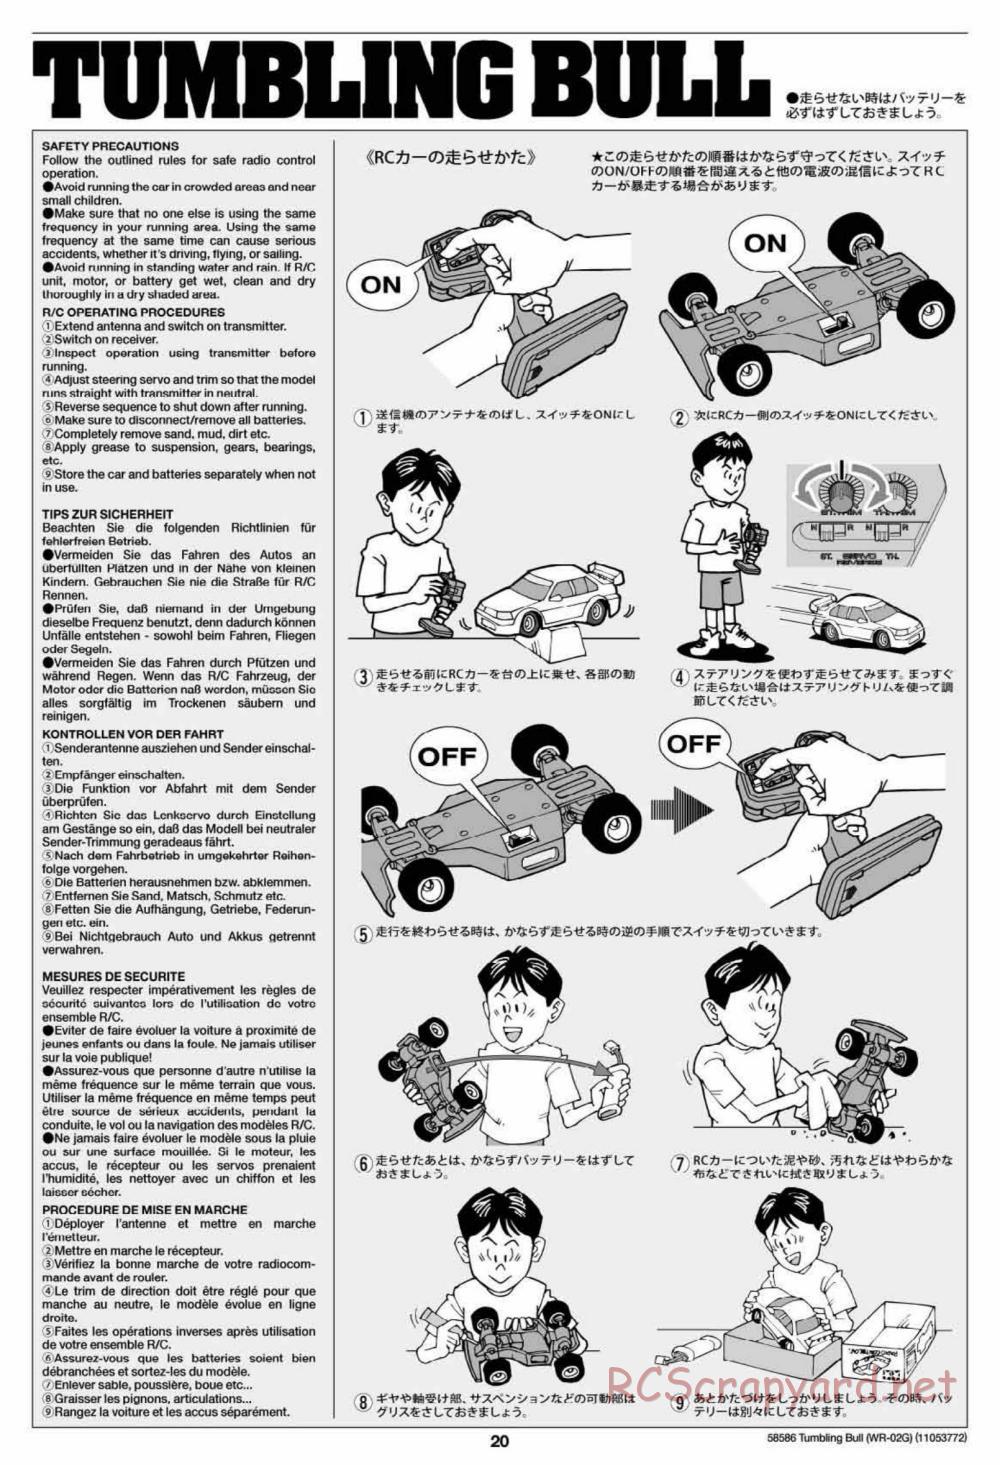 Tamiya - Tumbling Bull Chassis - Manual - Page 20